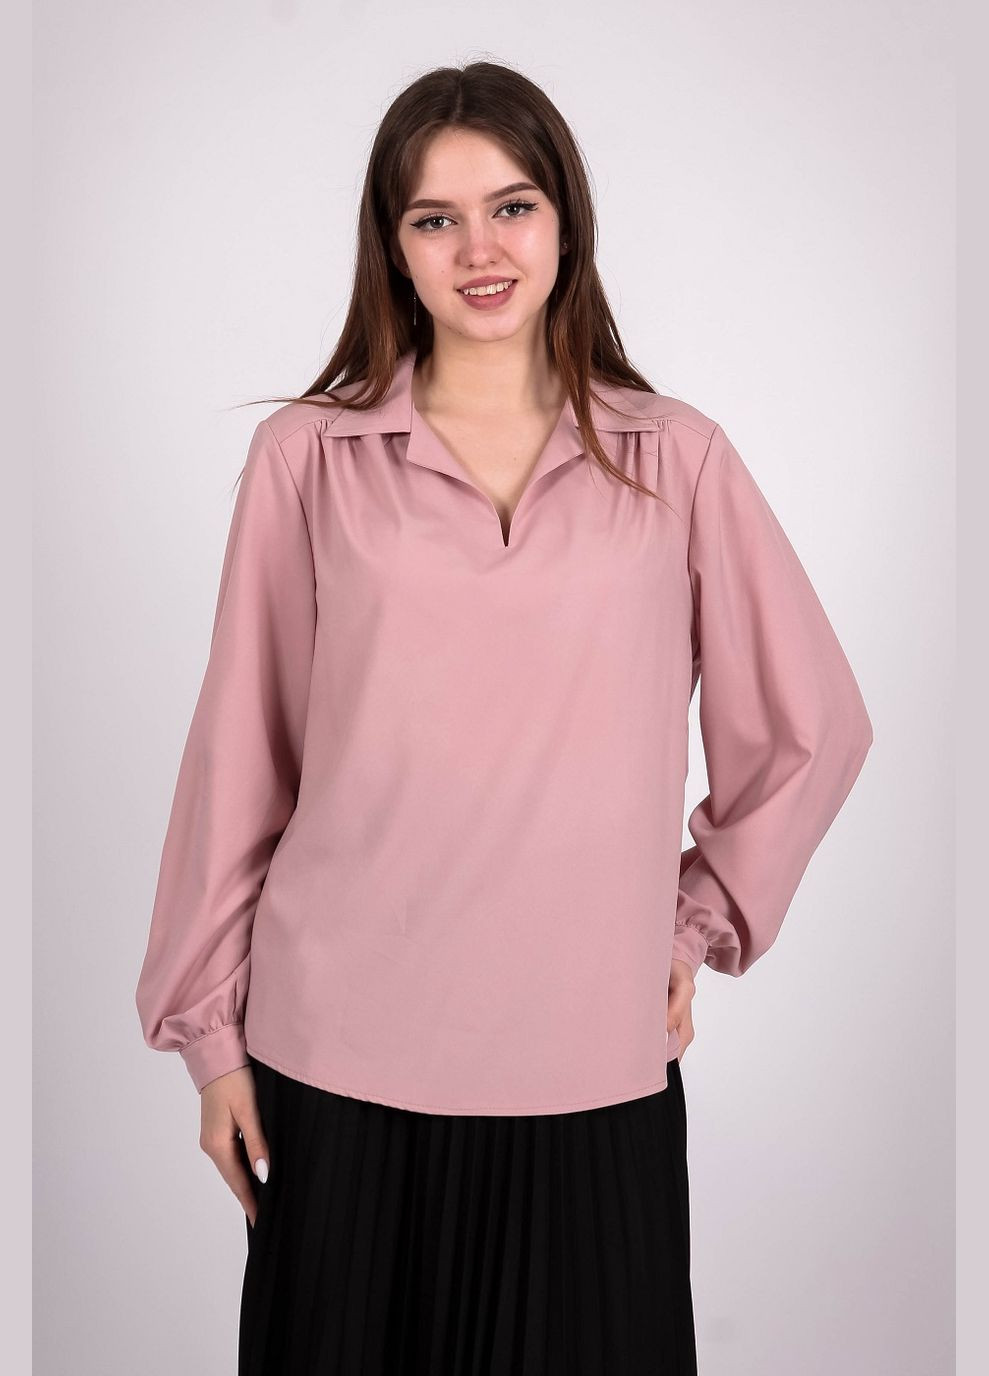 Пудровая демисезонная блузка женская 052 однотонный софт светло-пудровая Актуаль